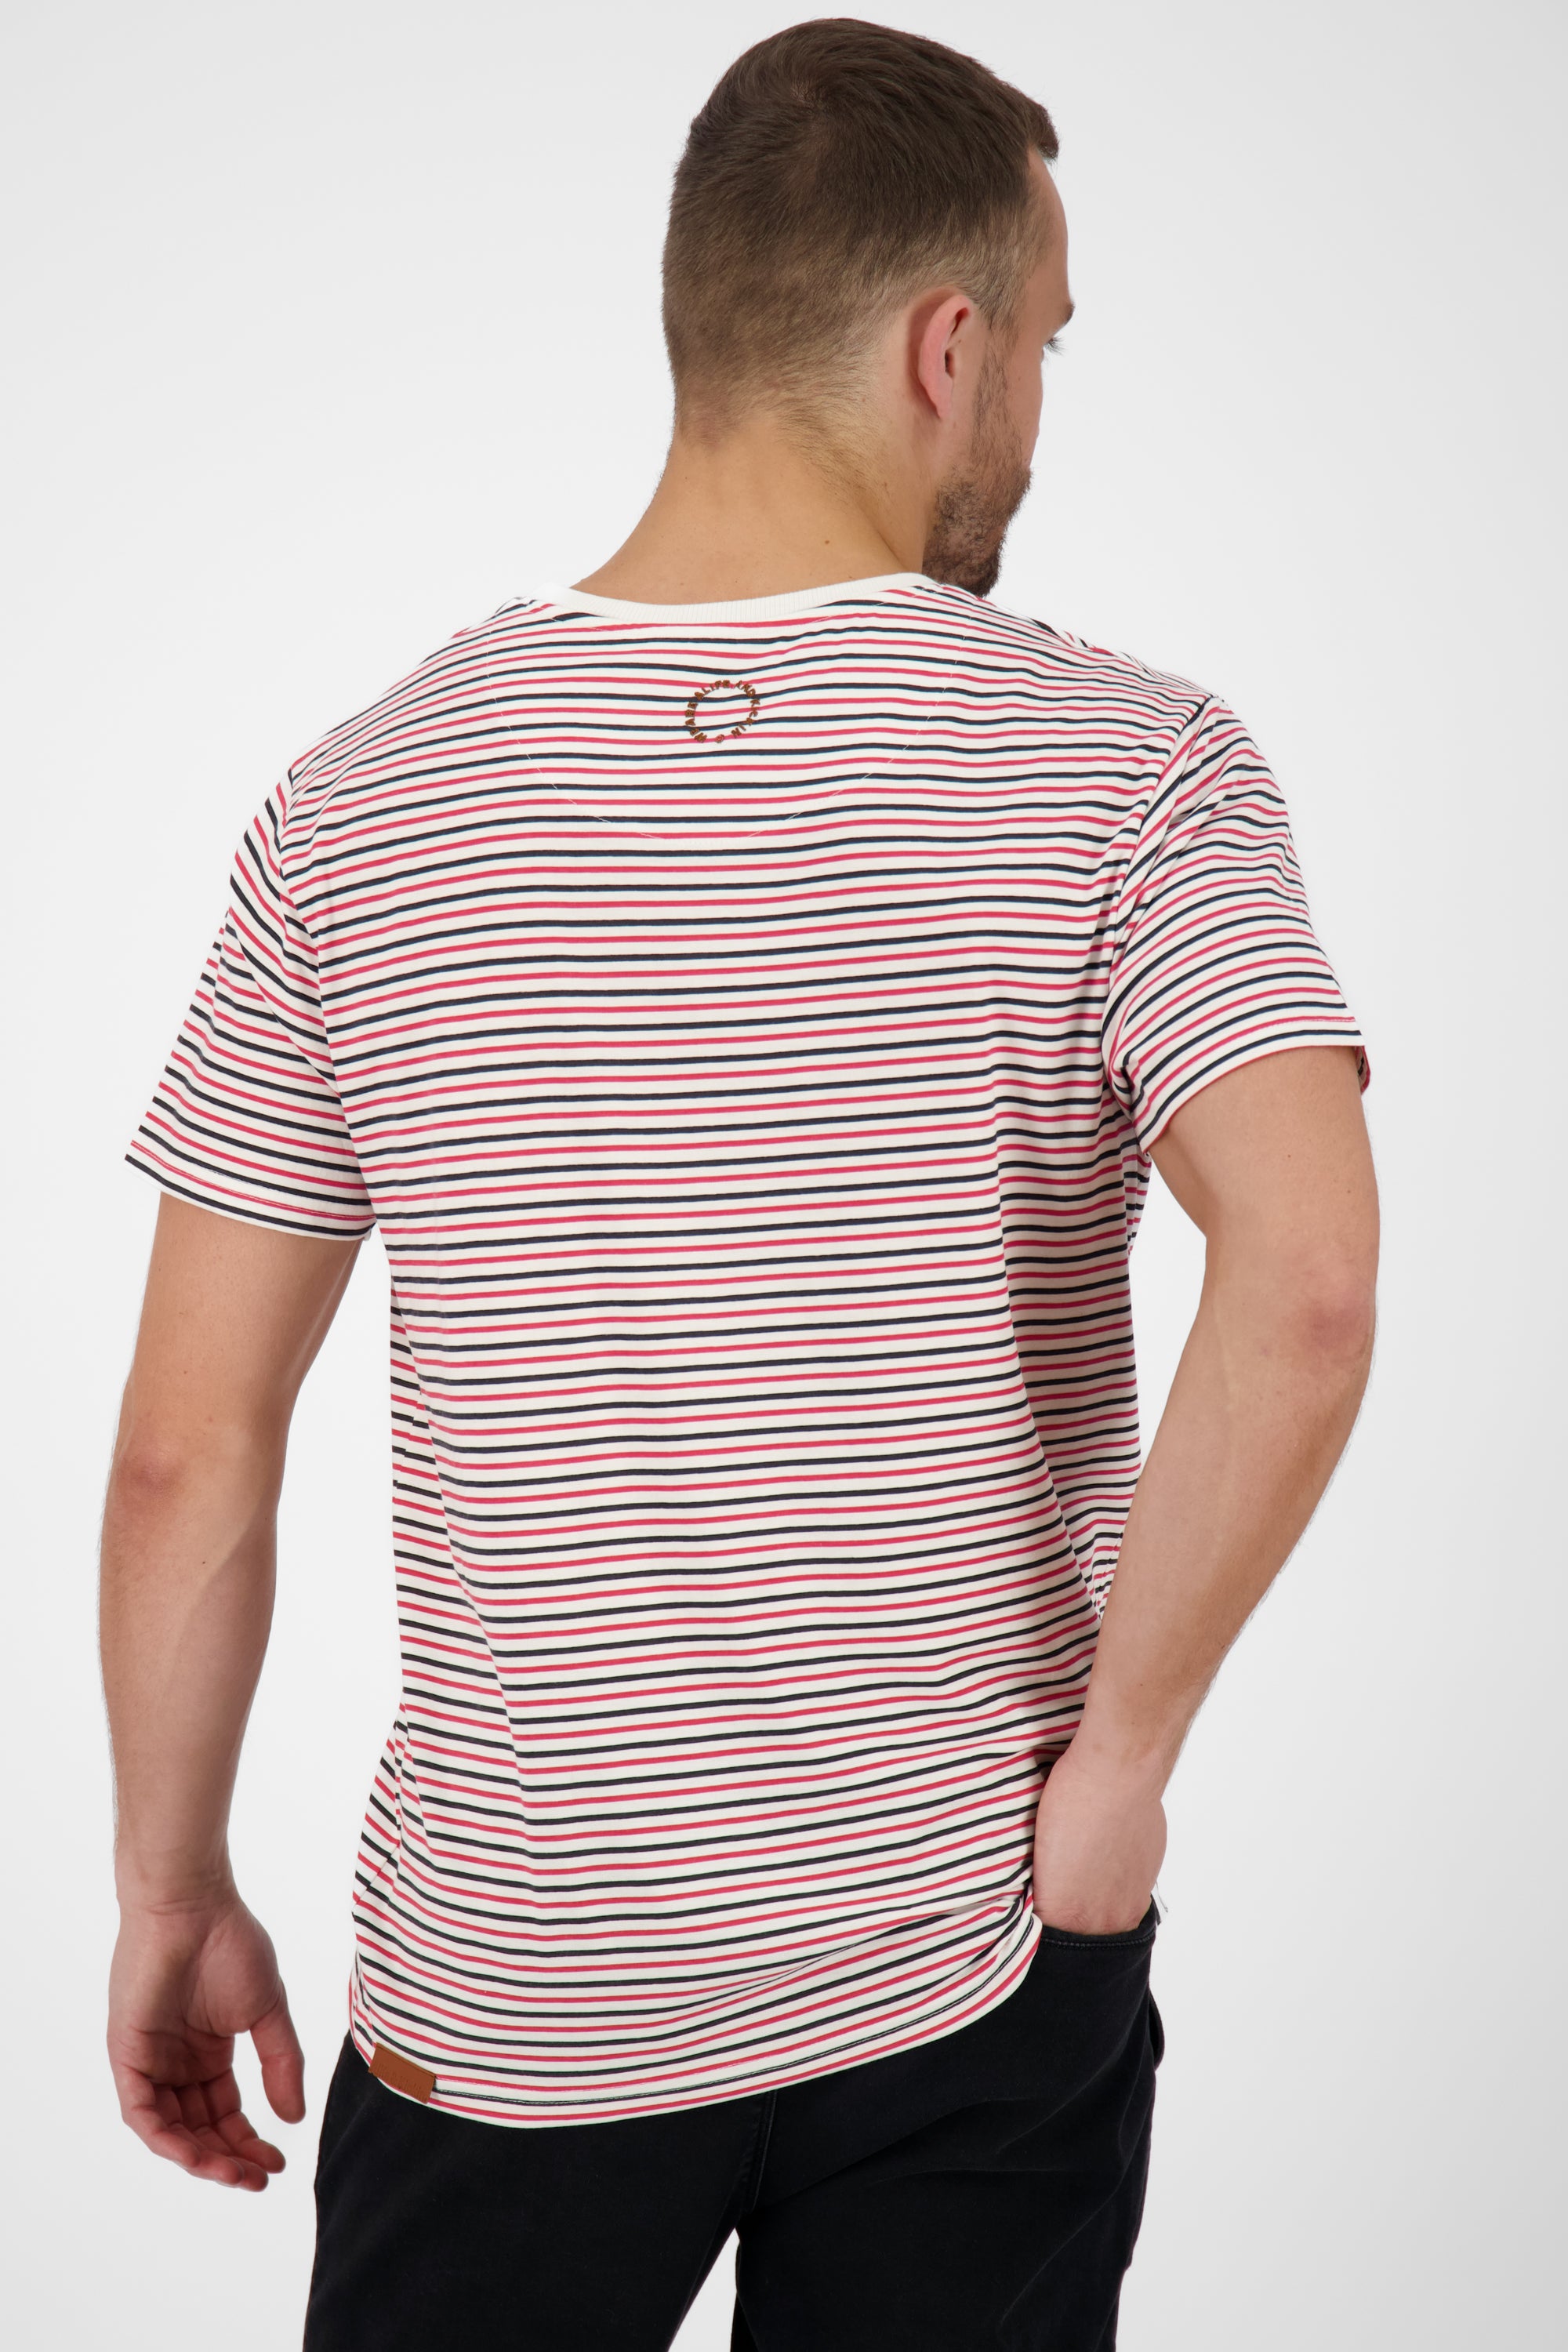 Herrenshirt NicAK Z Trendiges Streifendesign für den Sommer Grau